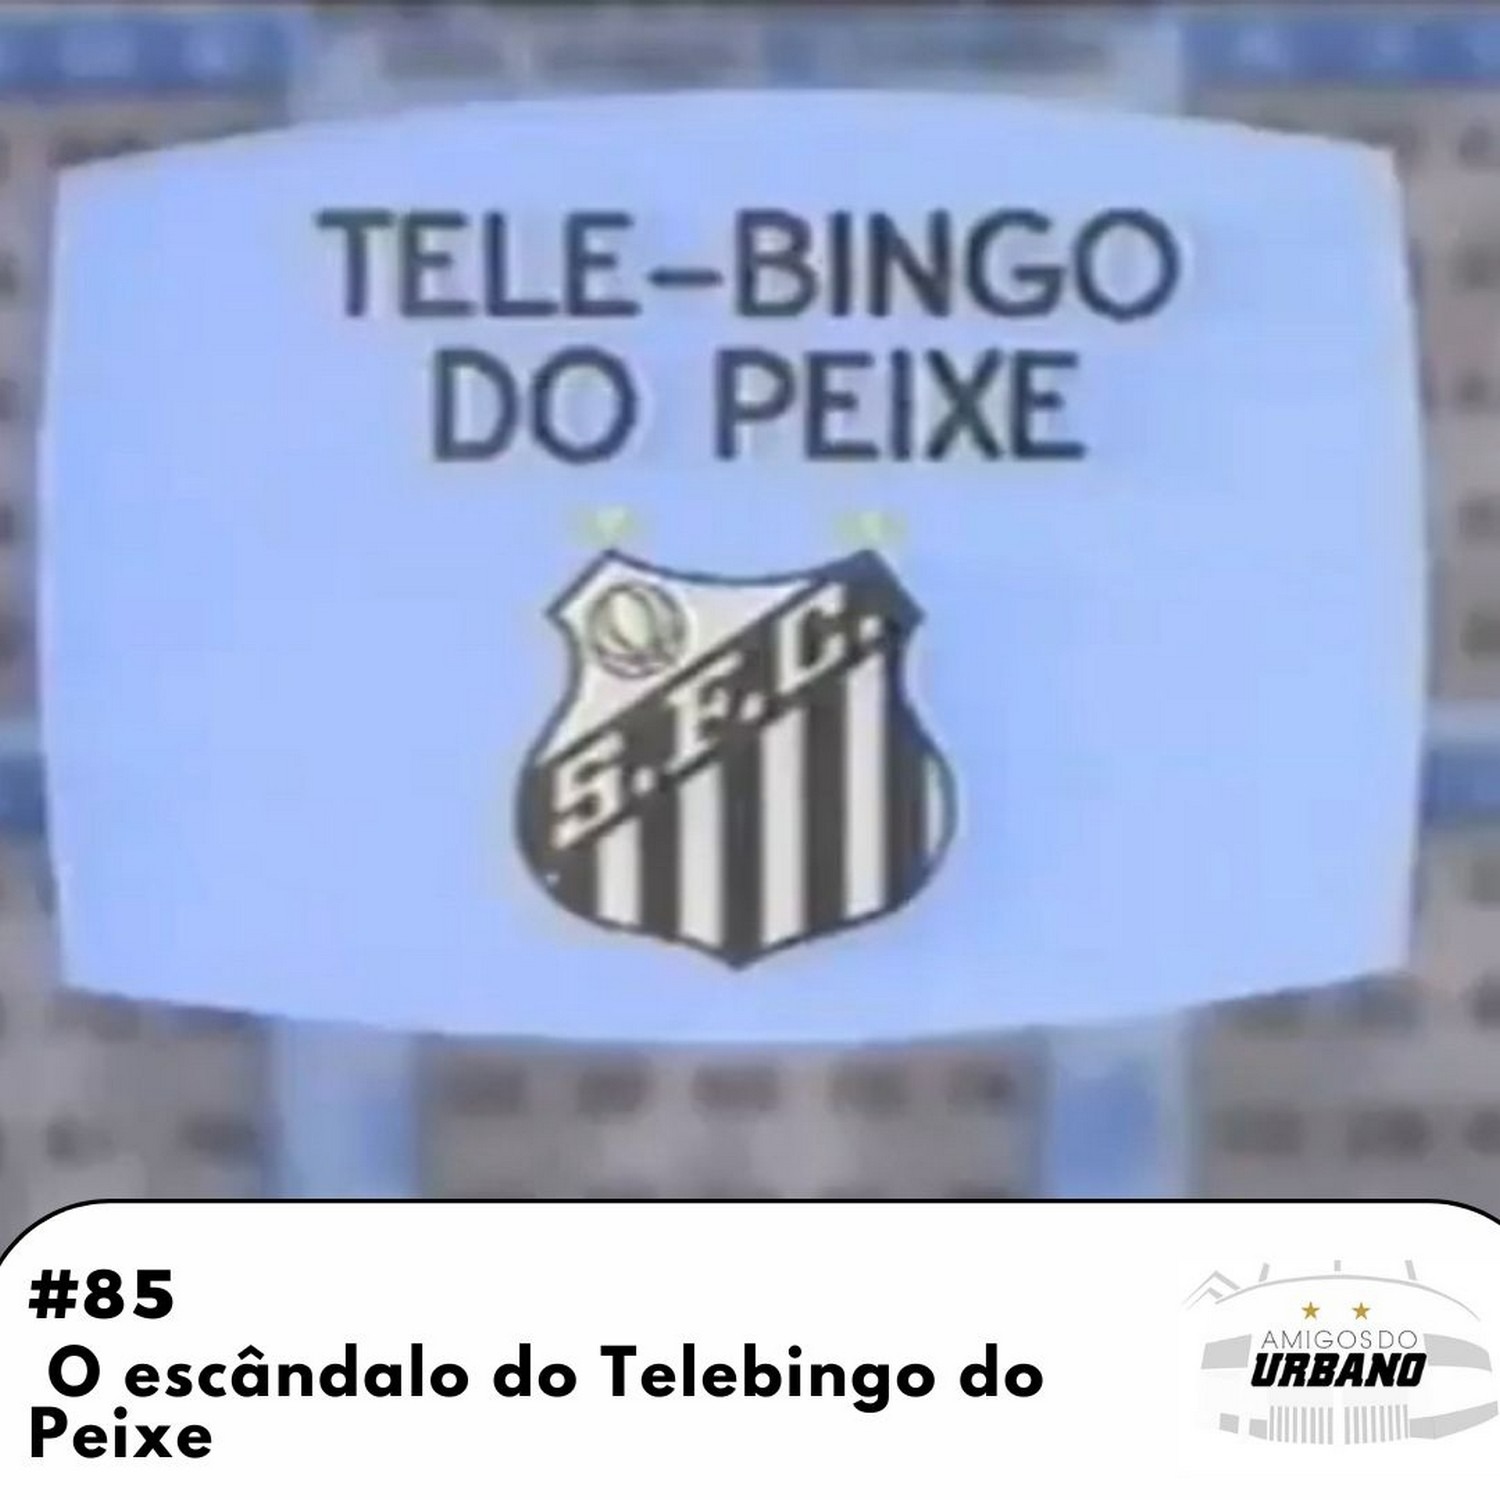 #85 - O escândalo do Telebingo do Peixe